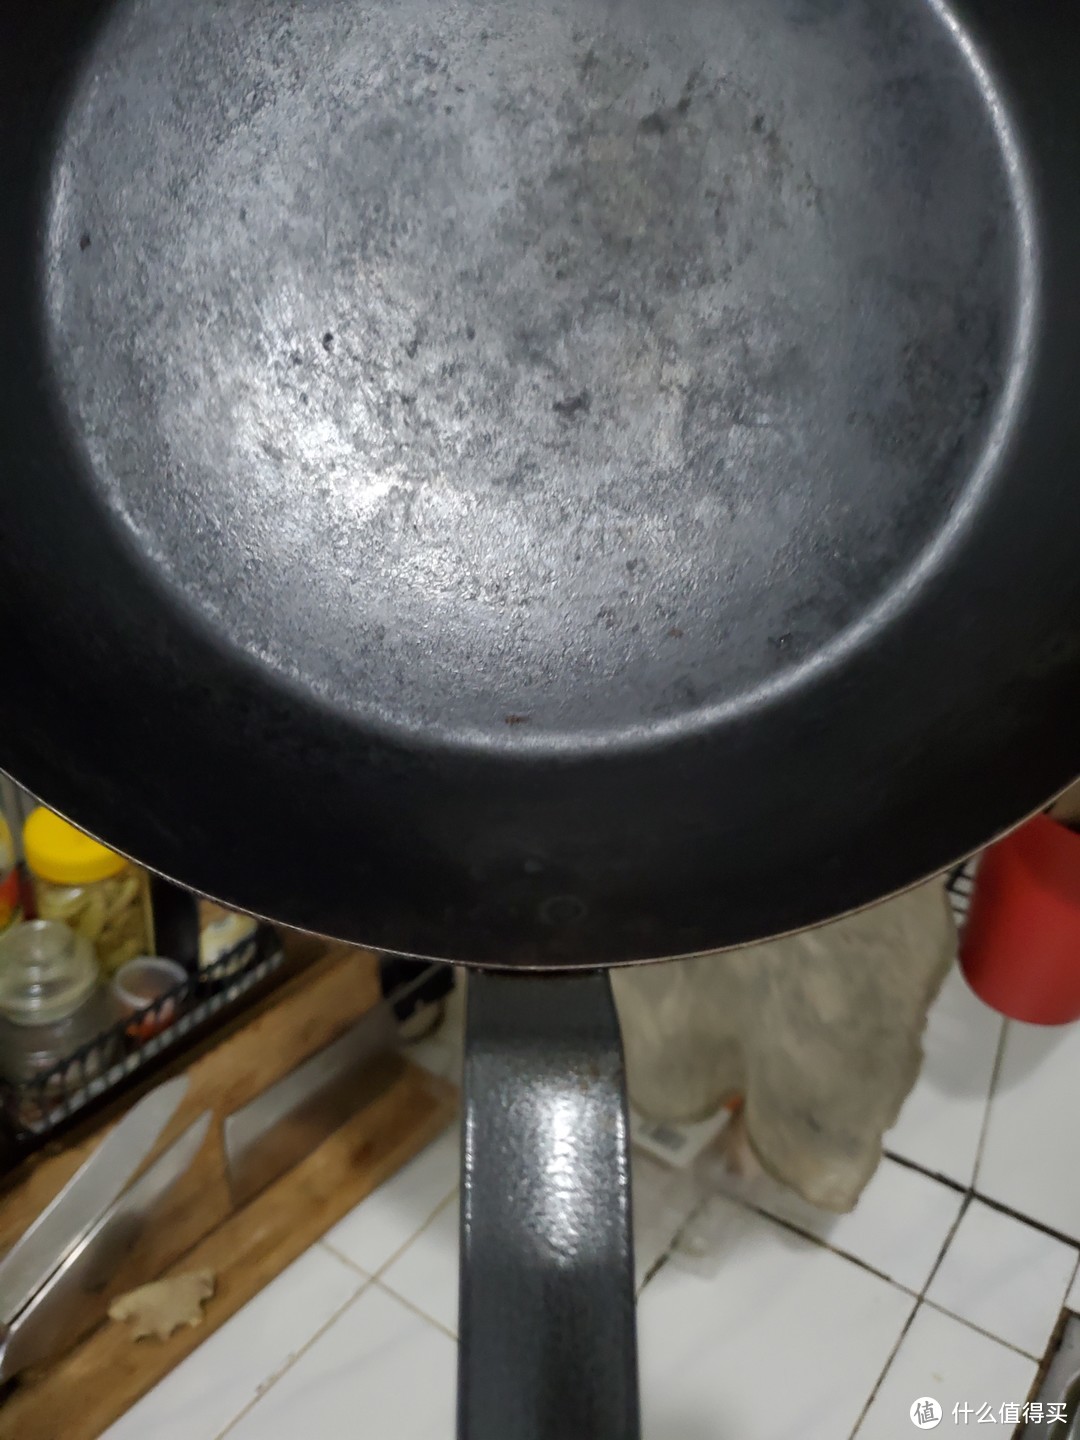 锅内的连接位置可以显示看到一个融焊点